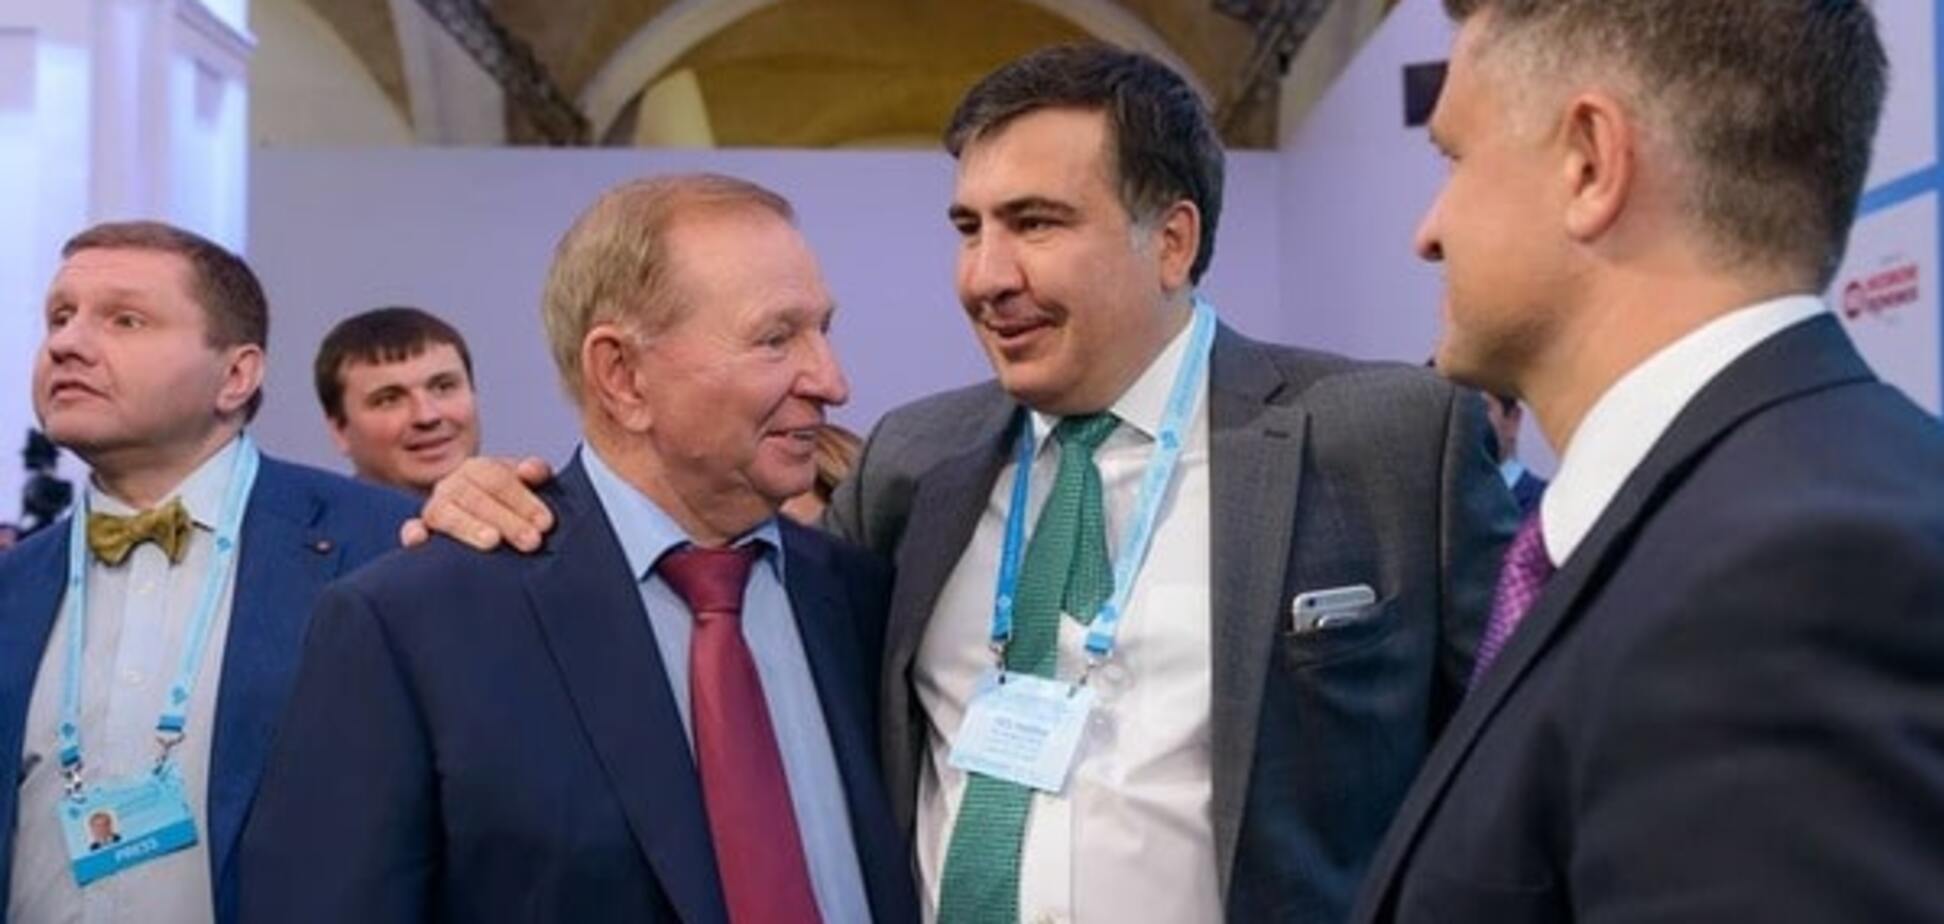 Борьба с коррупцией или PR? Журналист нашел связь Саакашвили с миллиардером Пинчуком